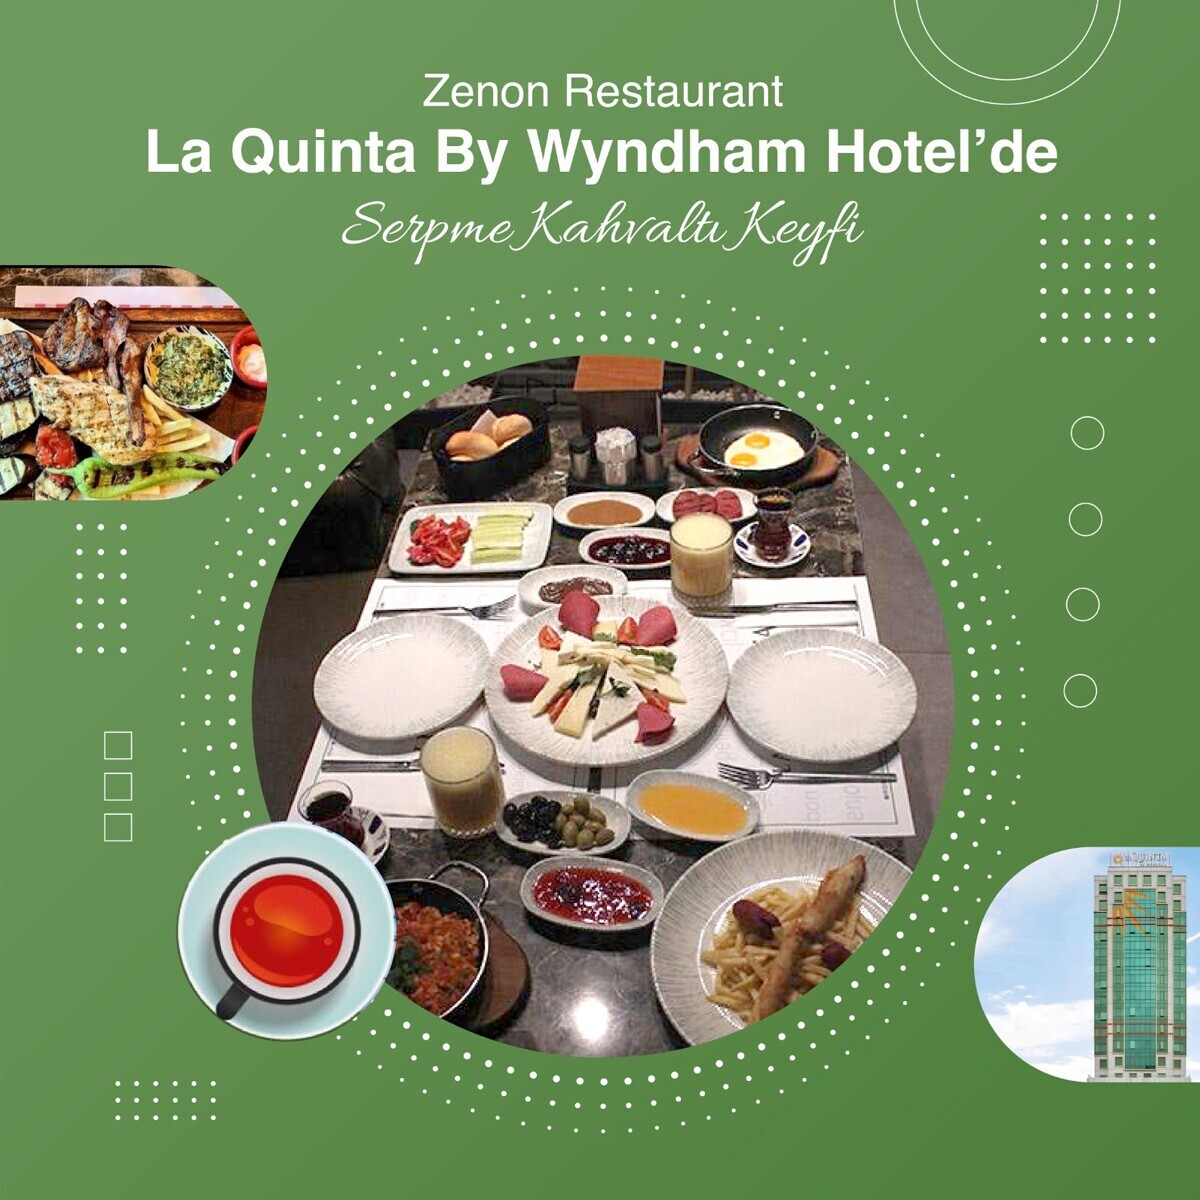 Güneşli La Quinta By Wyndham Hotel'de 2 Kişilik Serpme Kahvaltı Menüsü